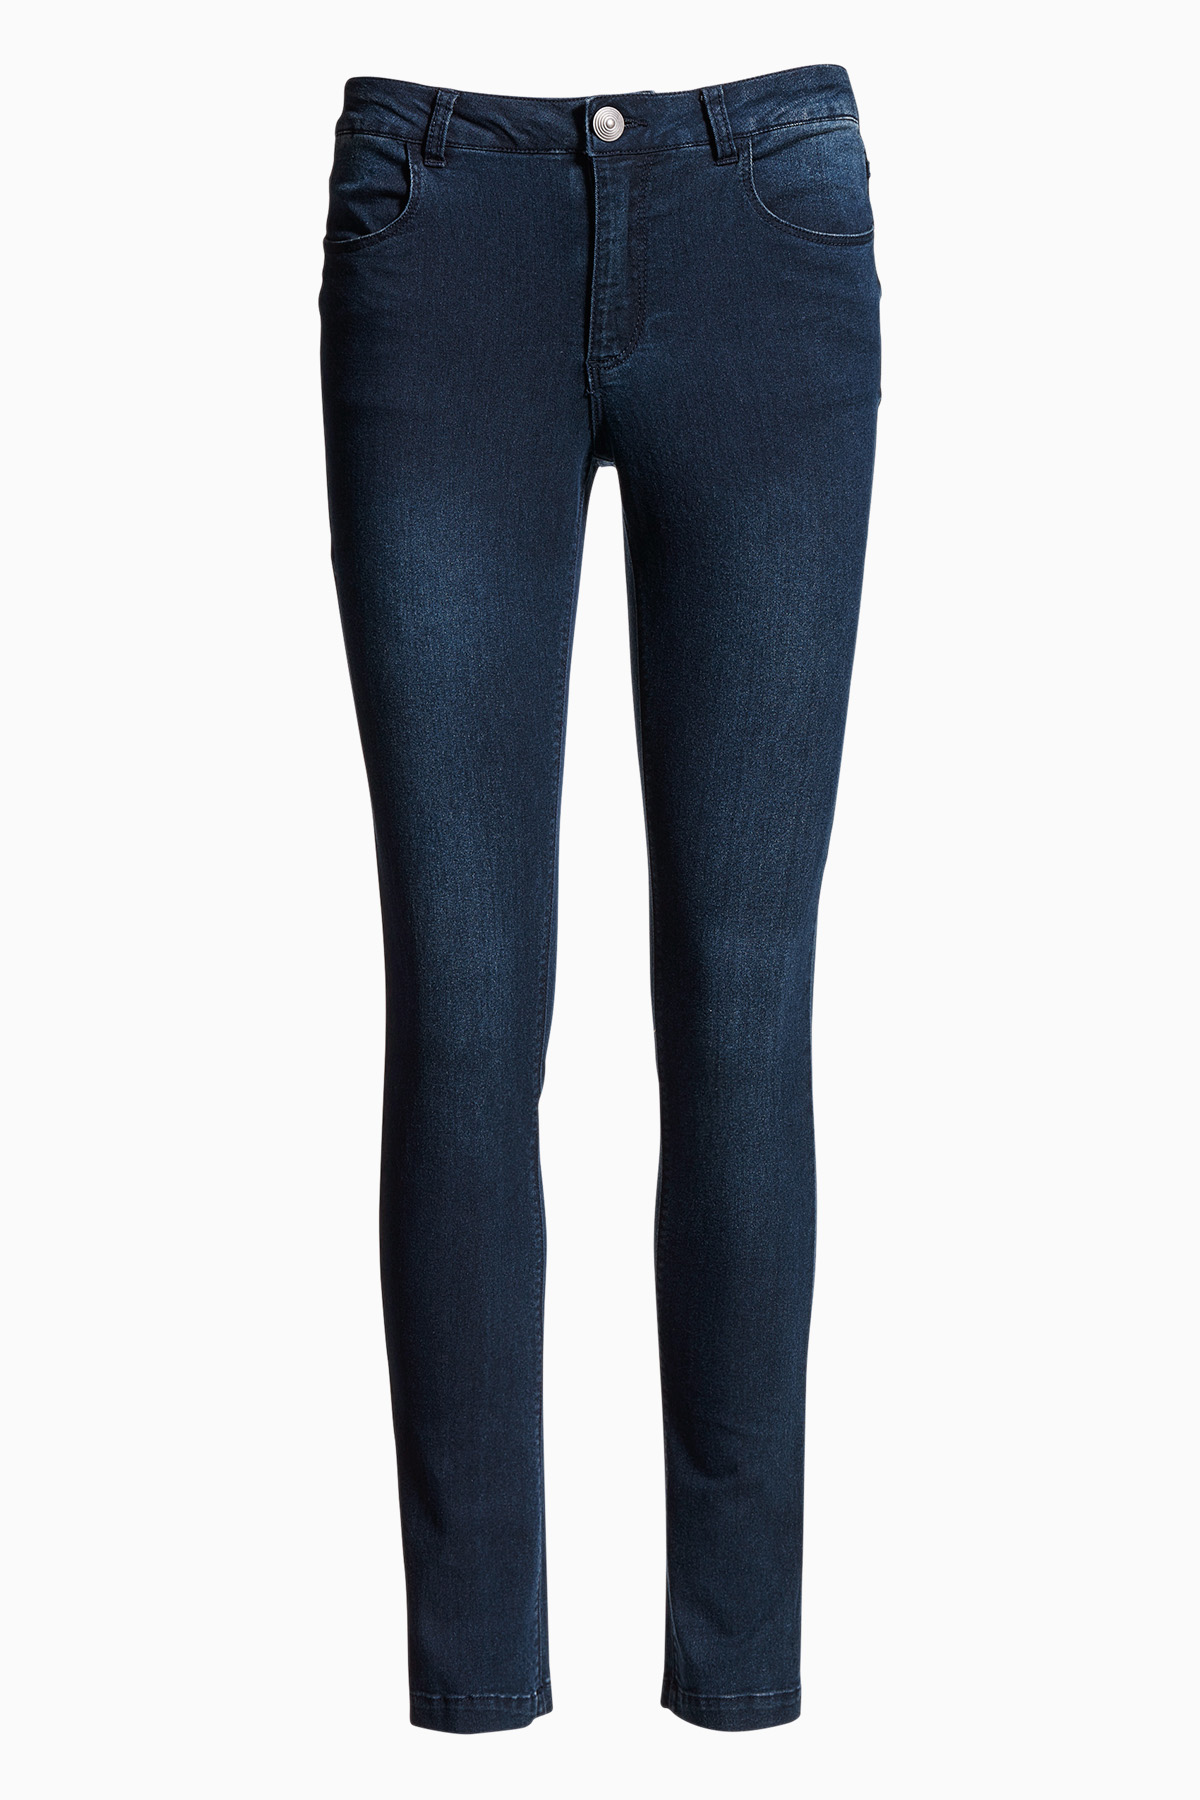 B.young Dame Jeans Mørkeblå jeans fra B.young til dame i Blå -